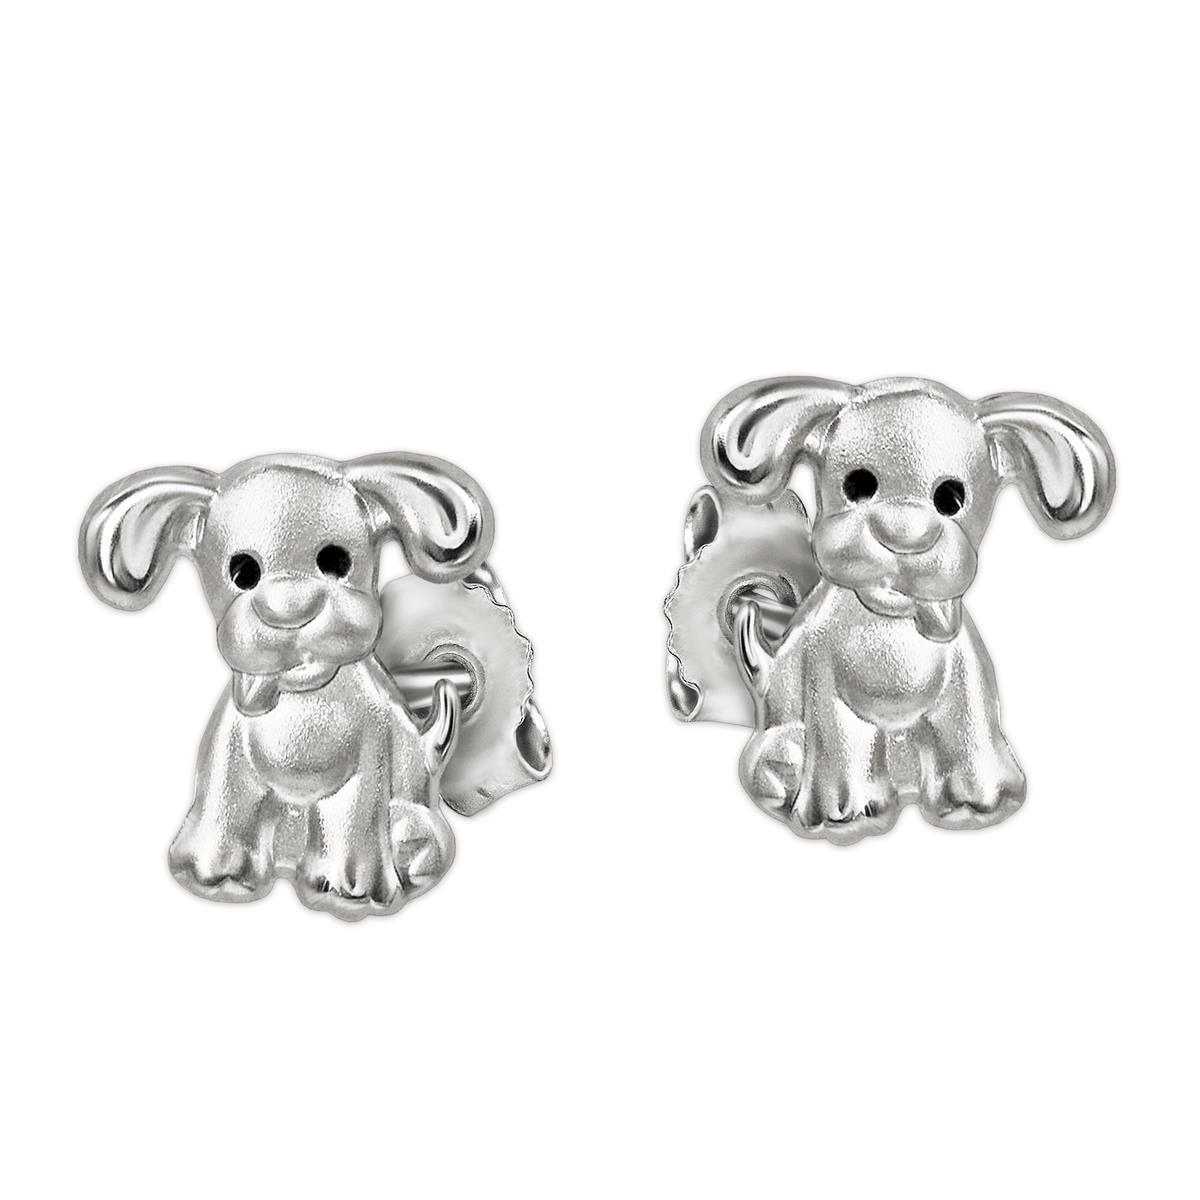 Silberne kleine Ohrstecker Mini Hunde 6 x 5 mm mit schwarzen Augen STERLING SILBER 925 für Kinder im Etui